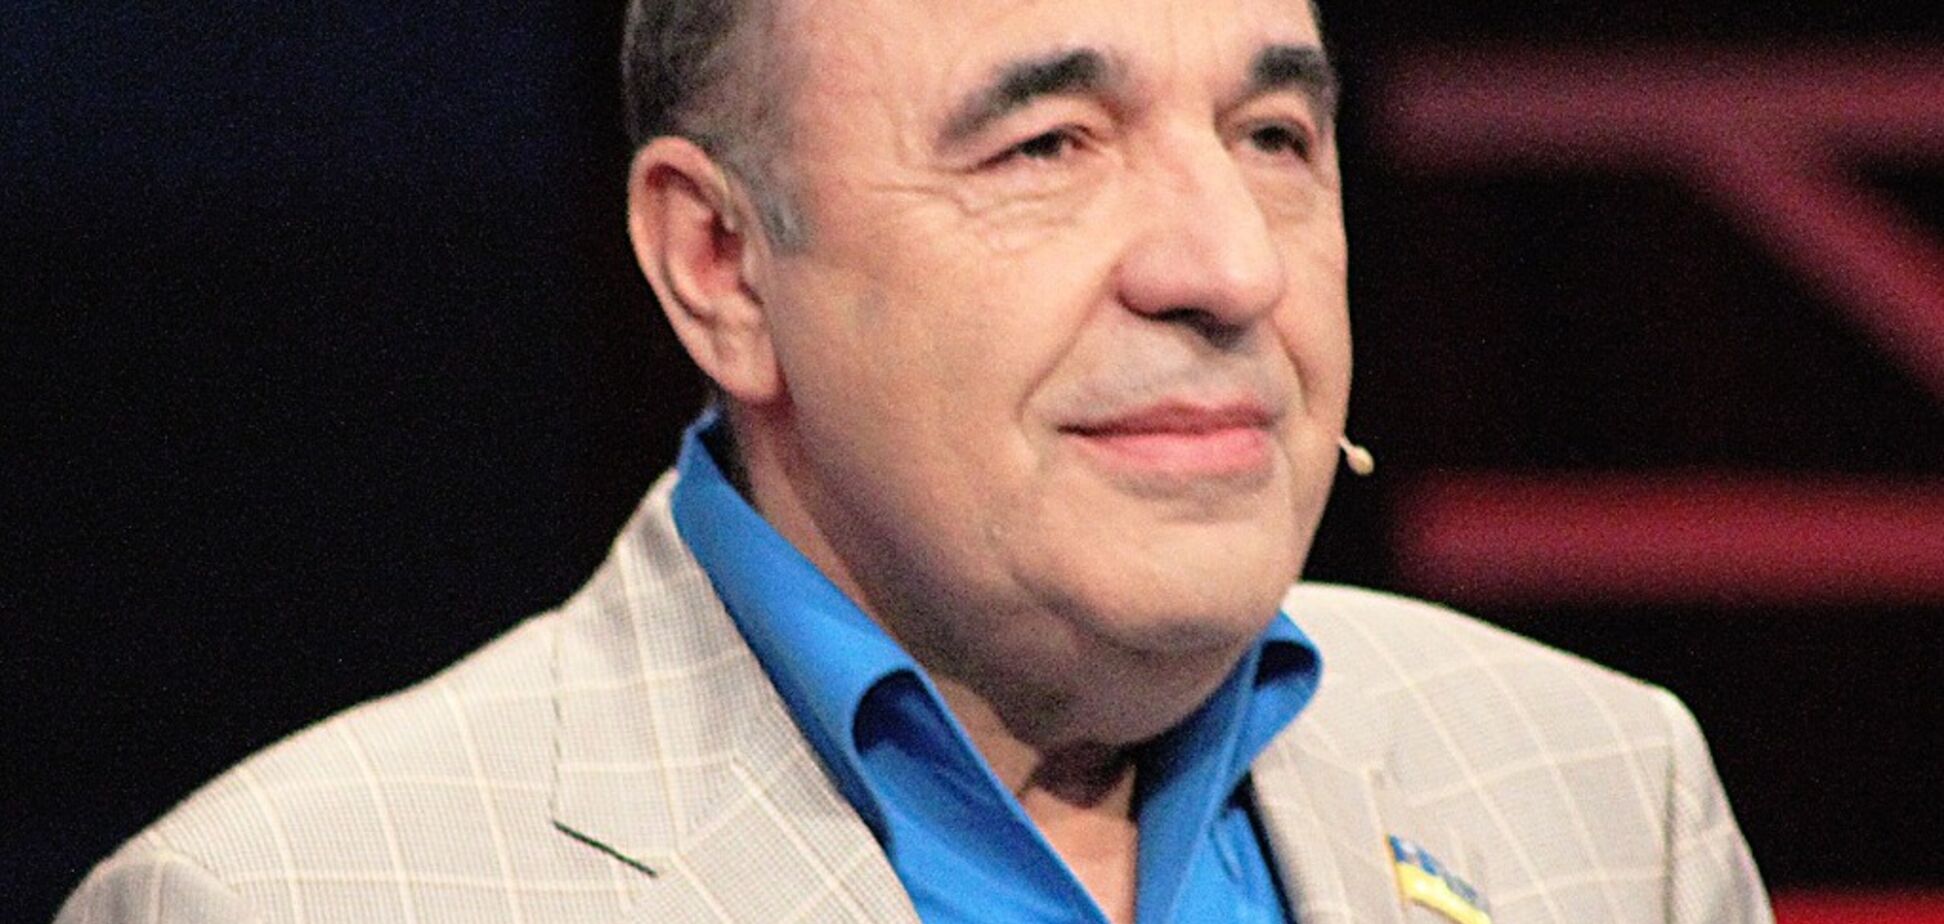 Вадим Рабинович